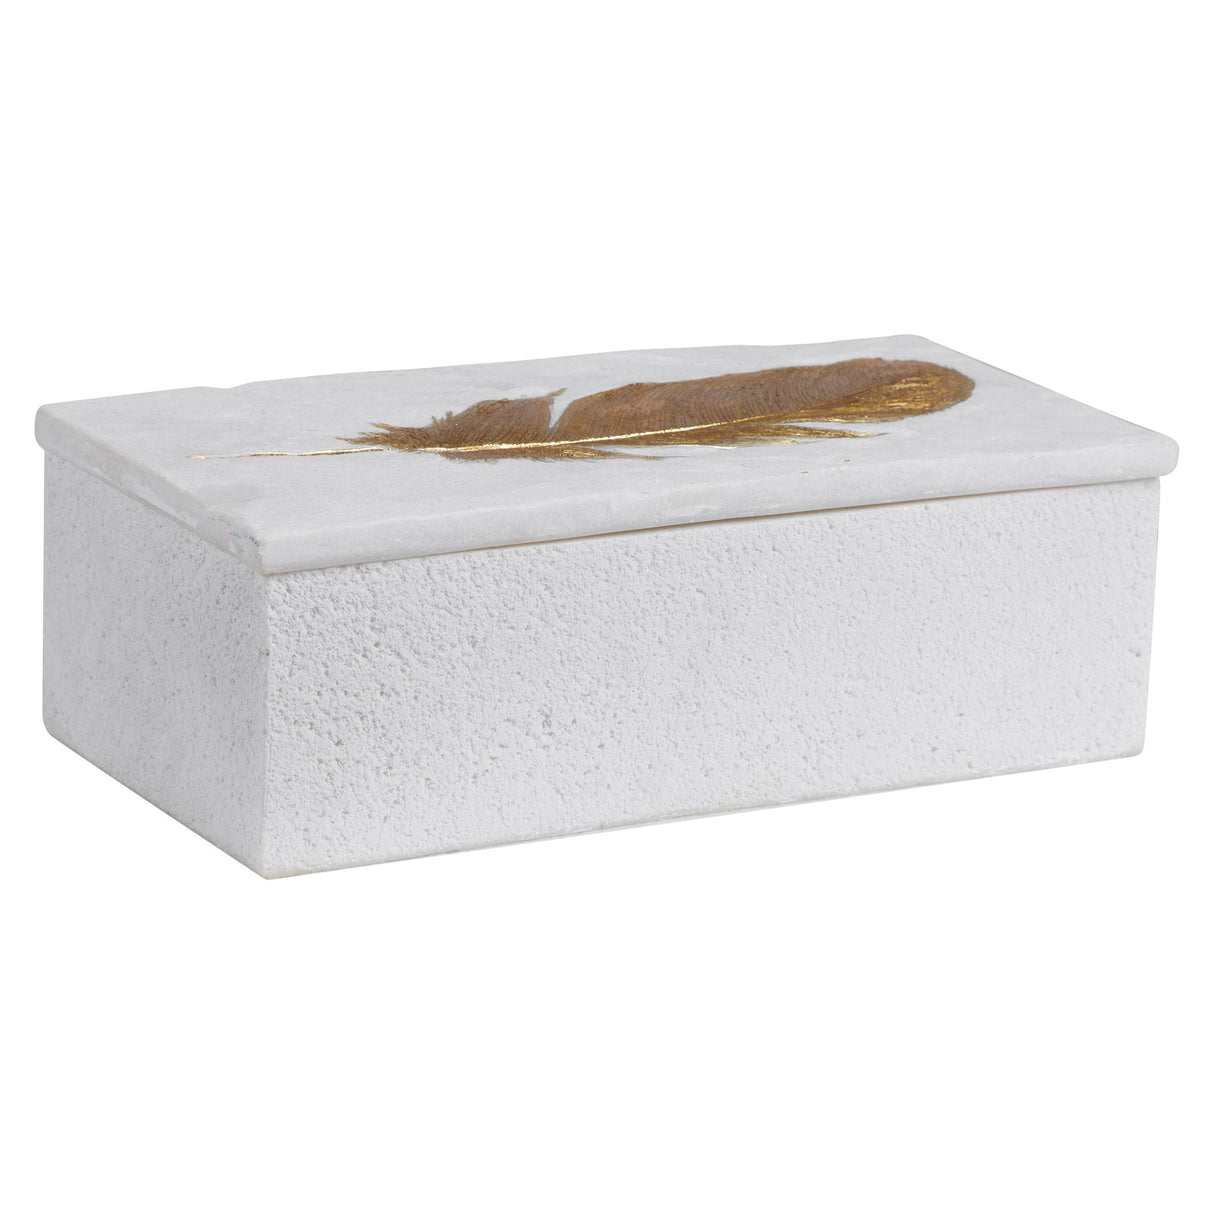 Nephele - Stone Box - White